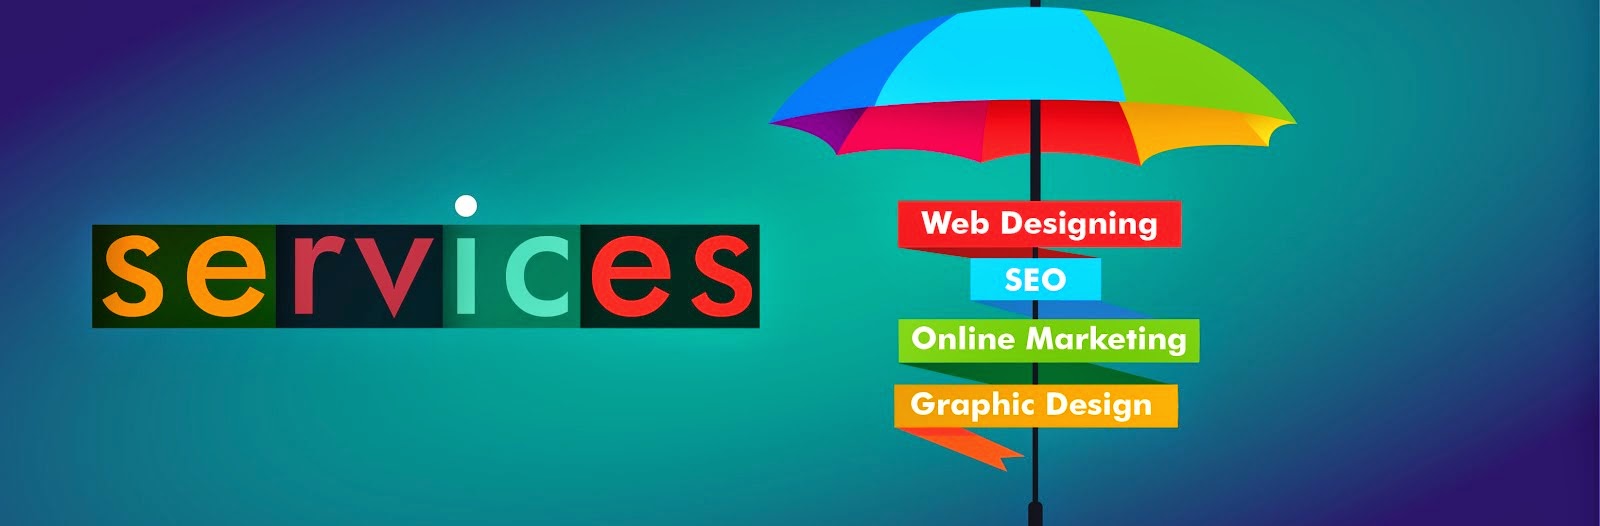 Web Design company in Chennai, SEO, Graphic Design 